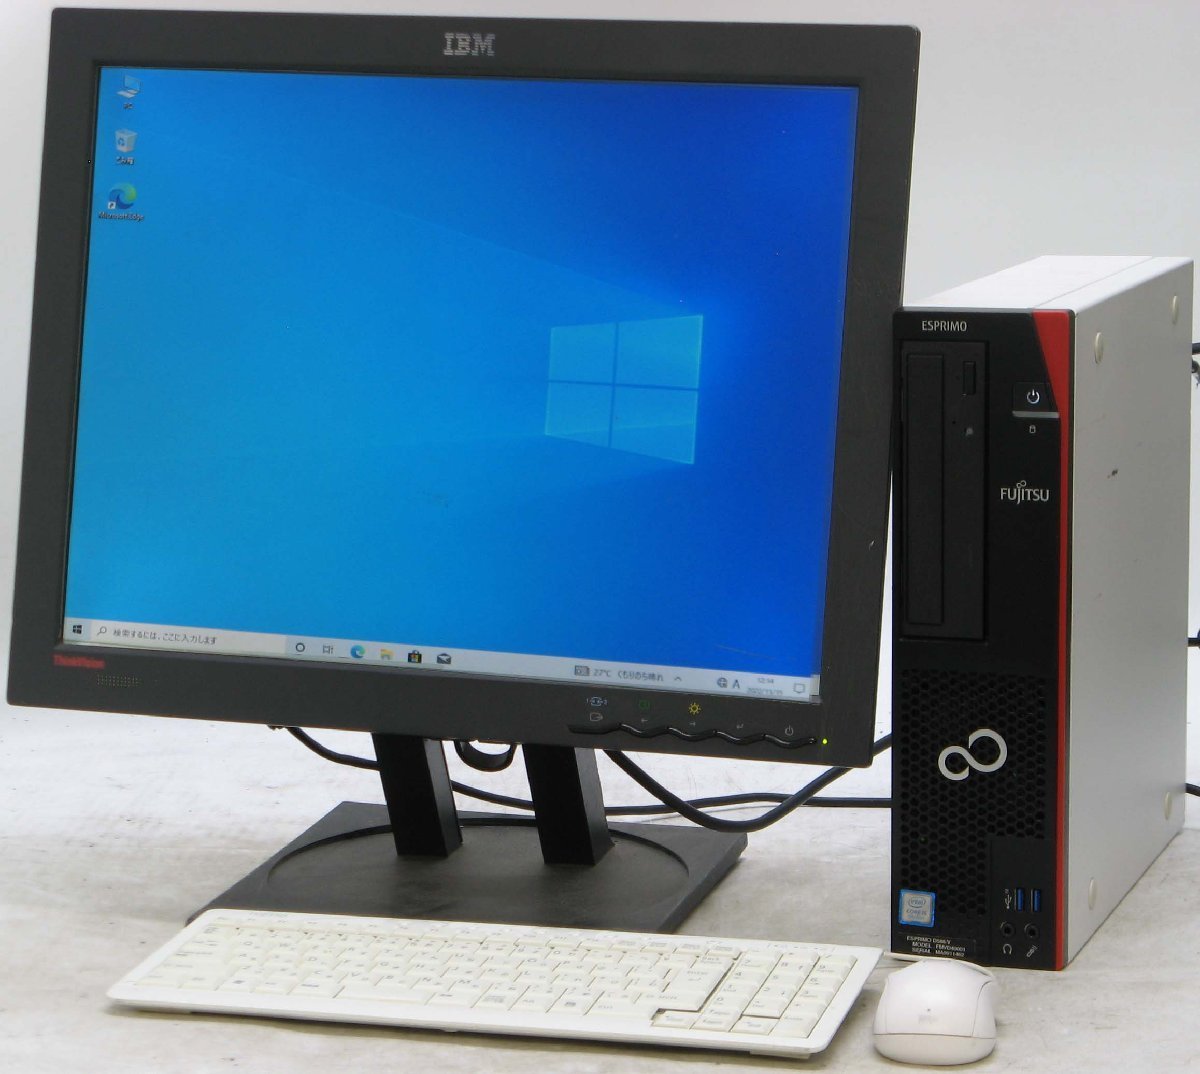 品質一番の Pro 10 Windows 中古パソコン 64bit HDD250GB メモリ2G i5